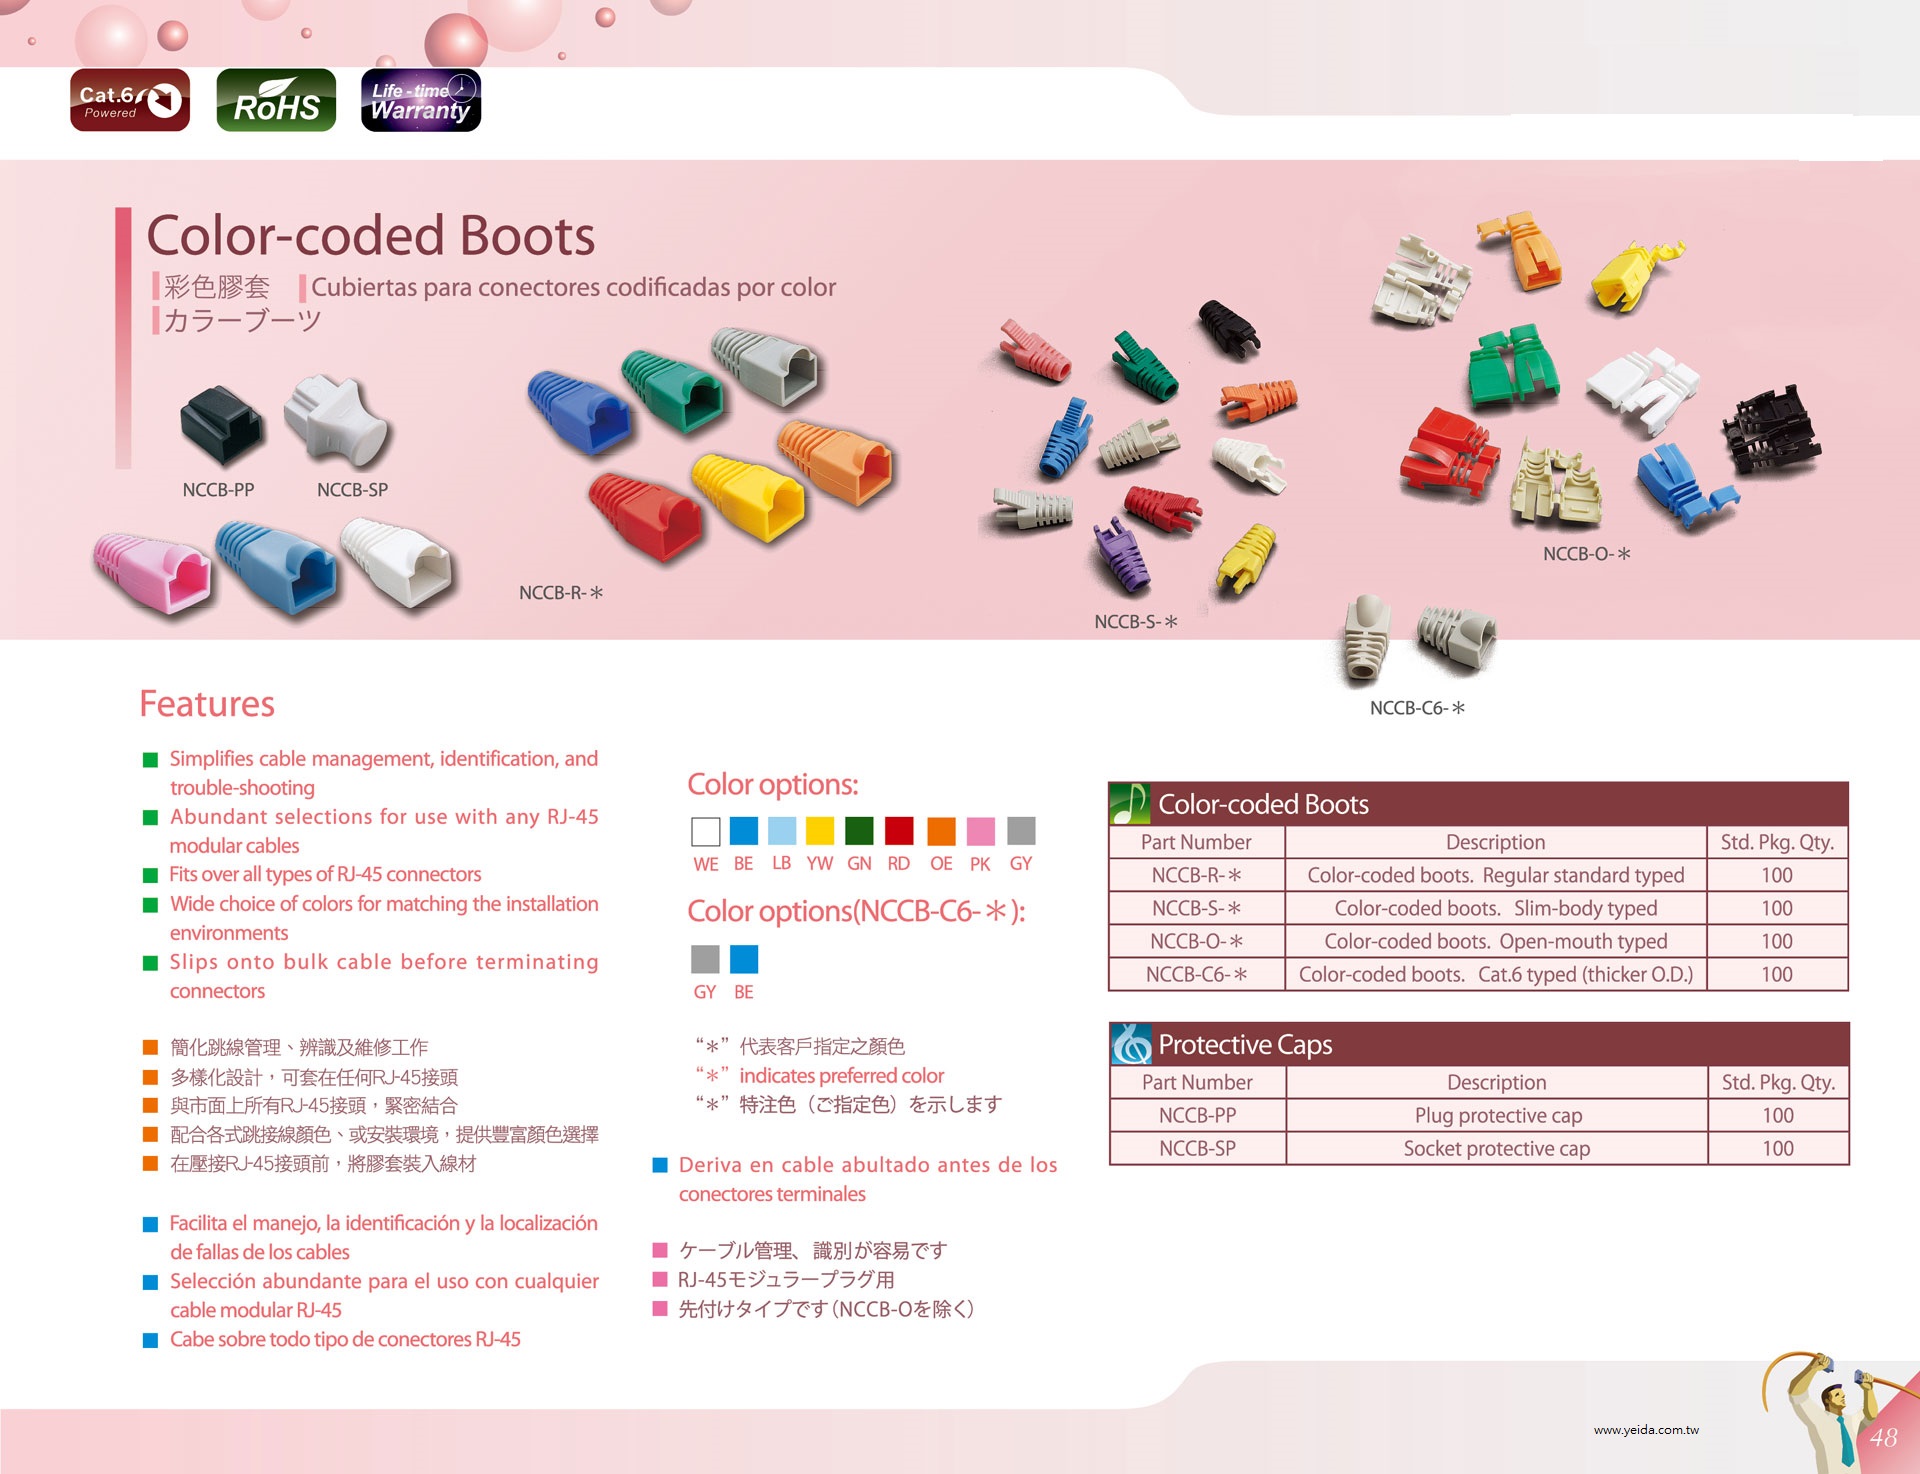 NEX1 彩色護套 Color-coded Boots產品圖